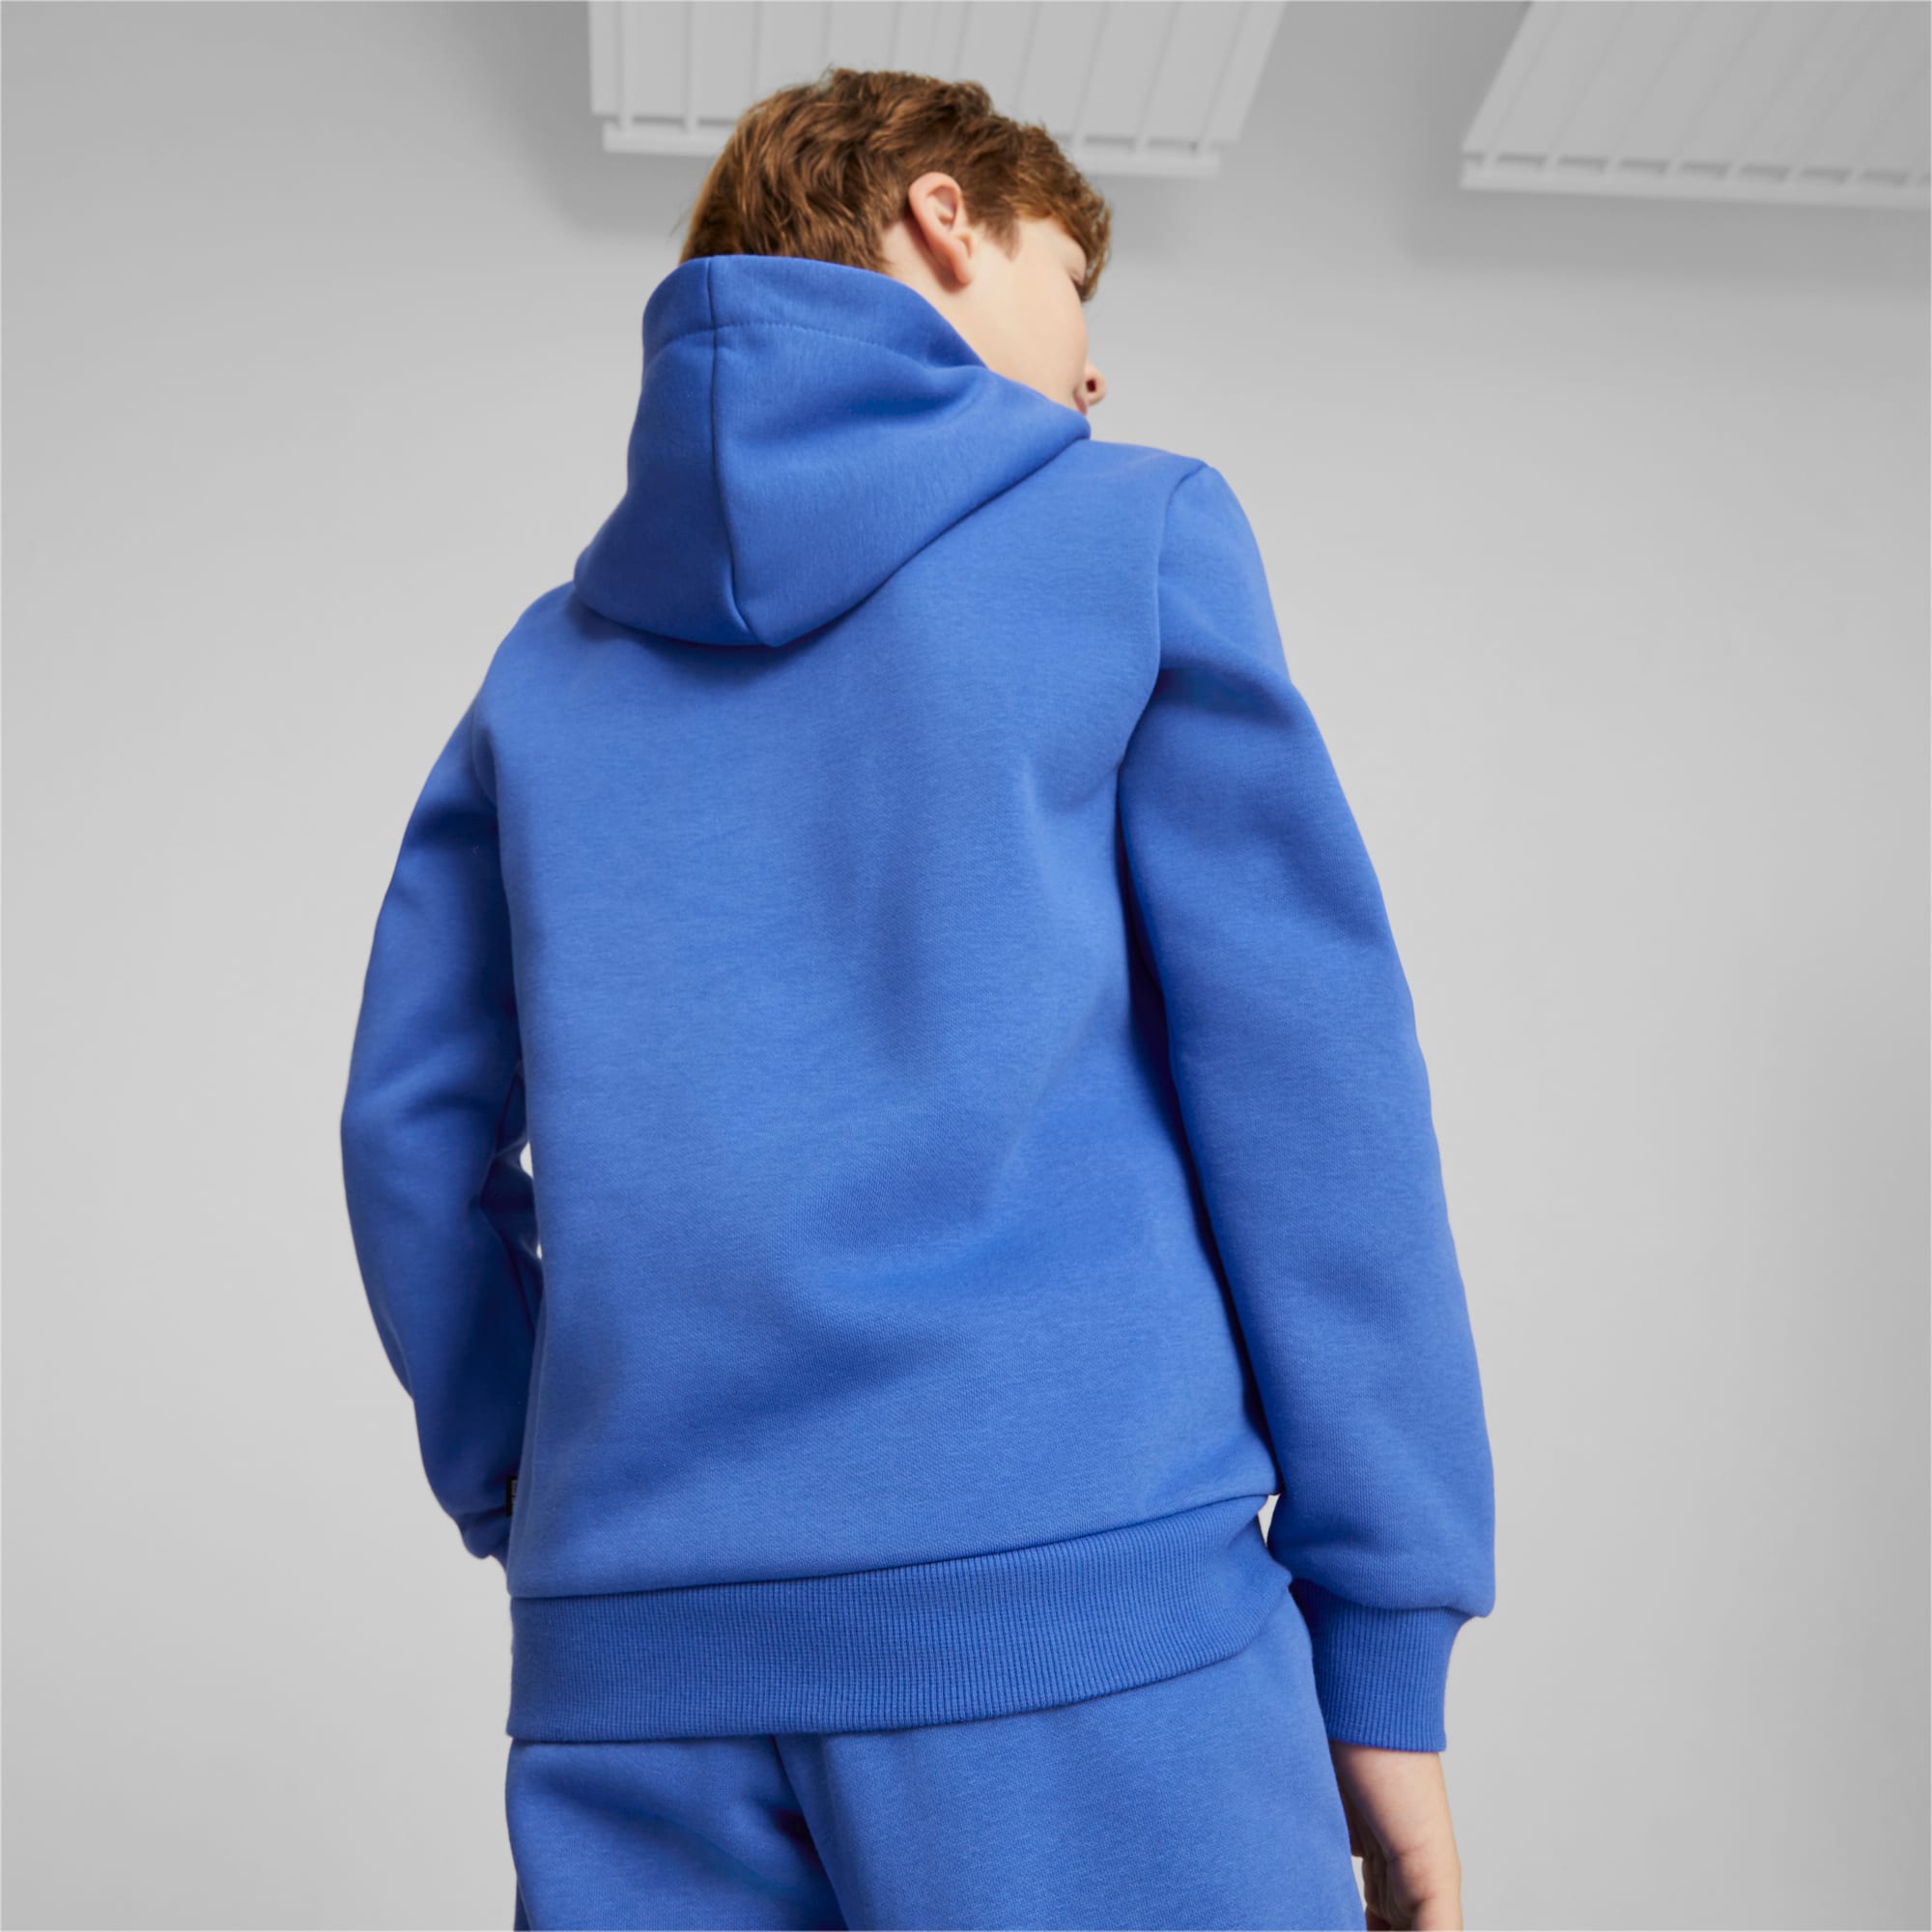 PUMA Essentials+ Two-Tone Big Logo Jugend Hoodie Für Kinder, Blau, Größe: 92, Kleidung